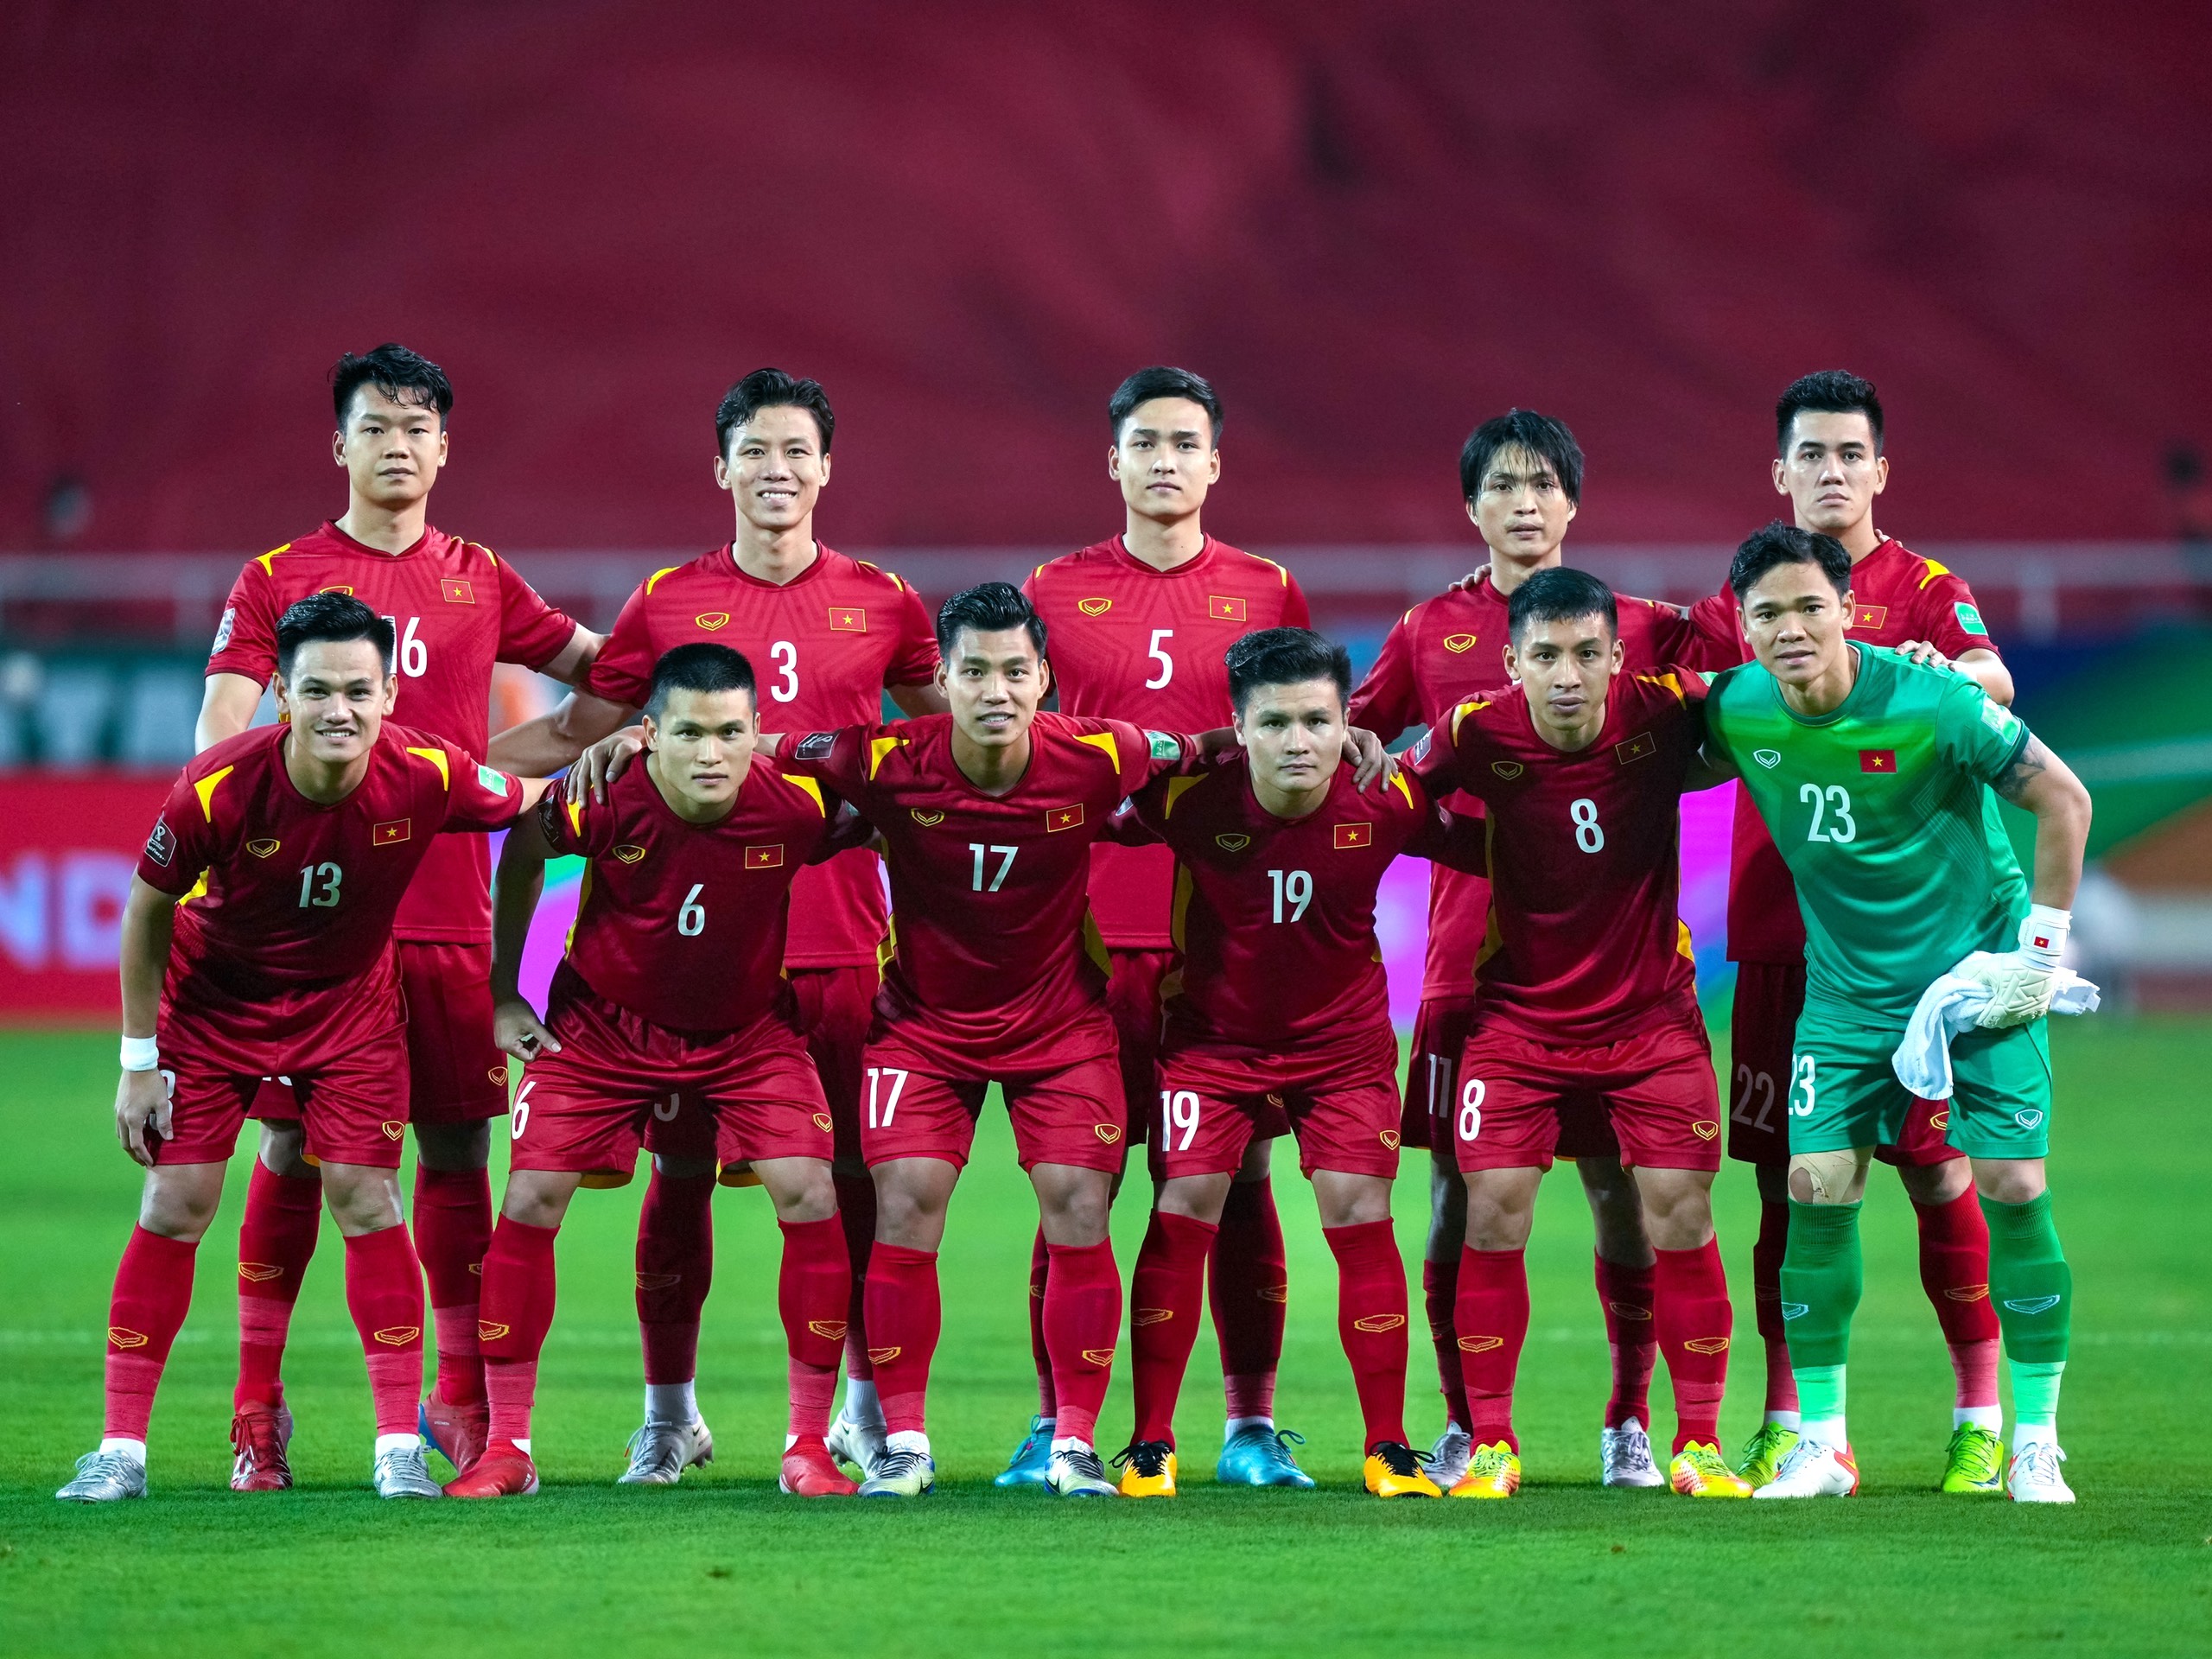 'Tuyển Việt Nam thay đổi, để đánh bại Thái Lan ở chung kết AFF Cup 2022'